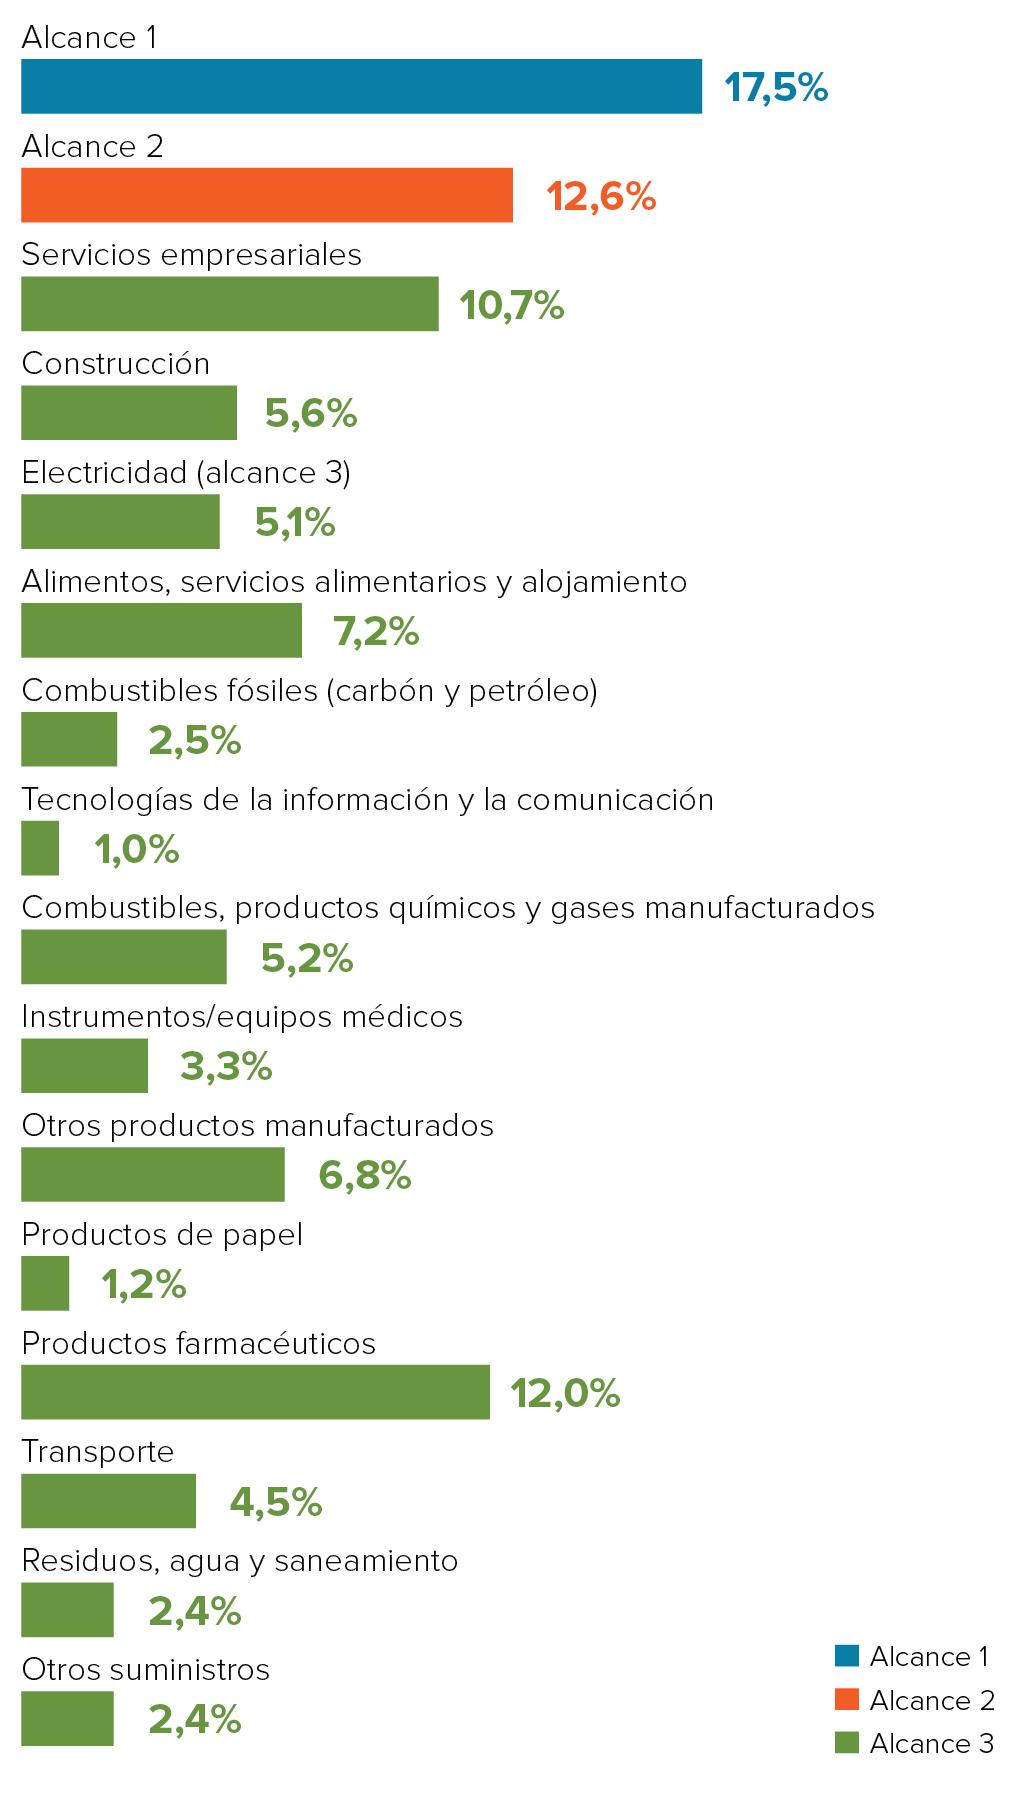 Emisiones globales del sector salud, clasificadas por categorías de la cadena de suministro.